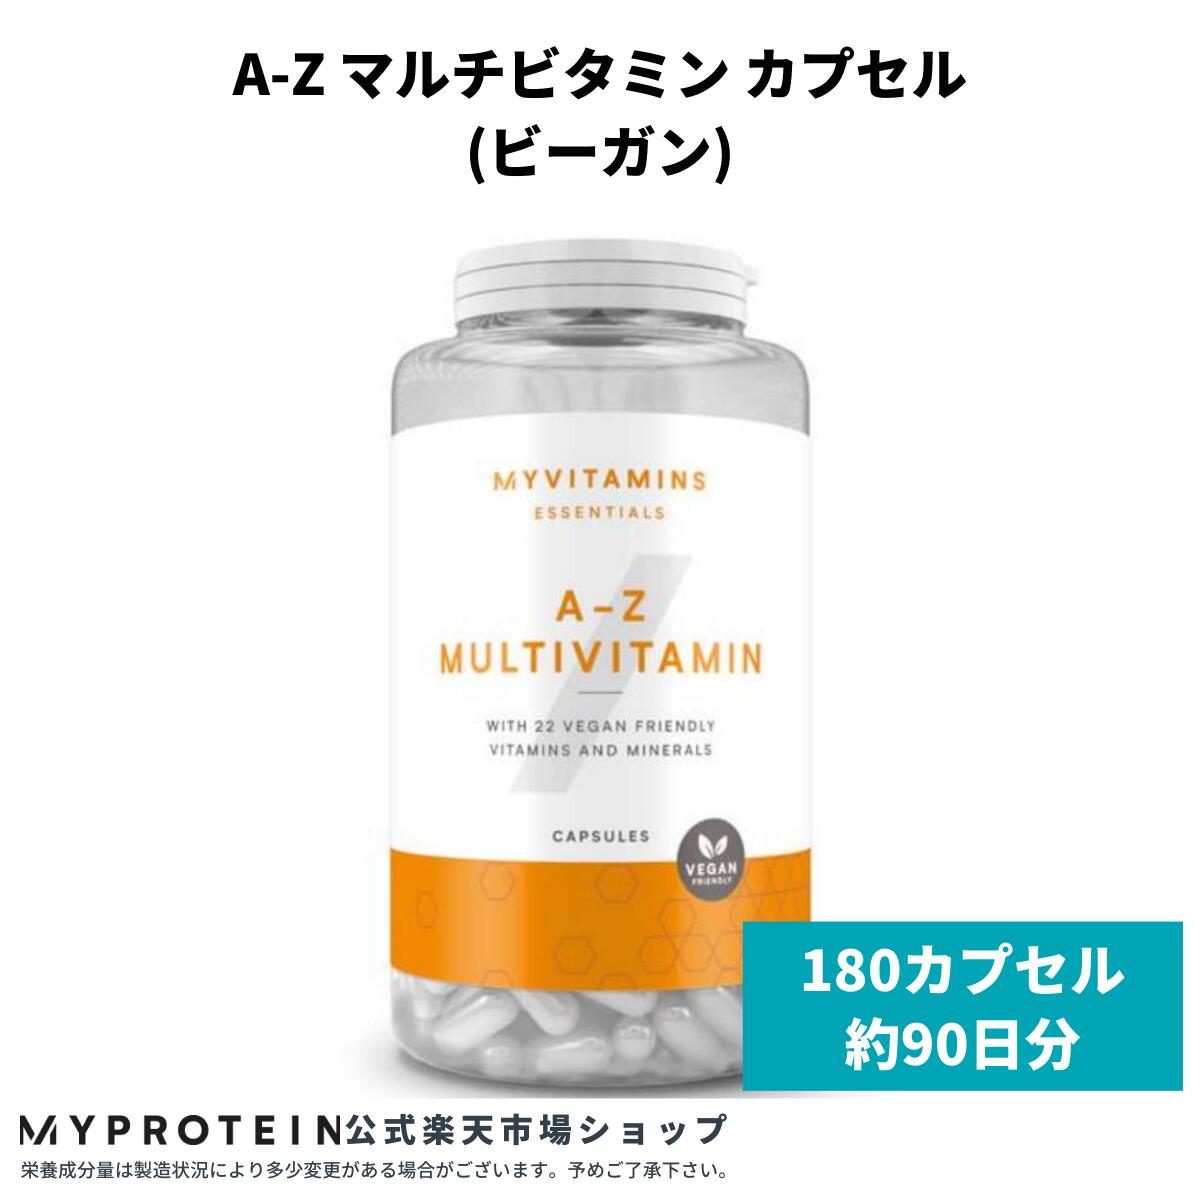 【楽天市場】マイプロテイン A-Z マルチビタミンカプセル(ビーガン